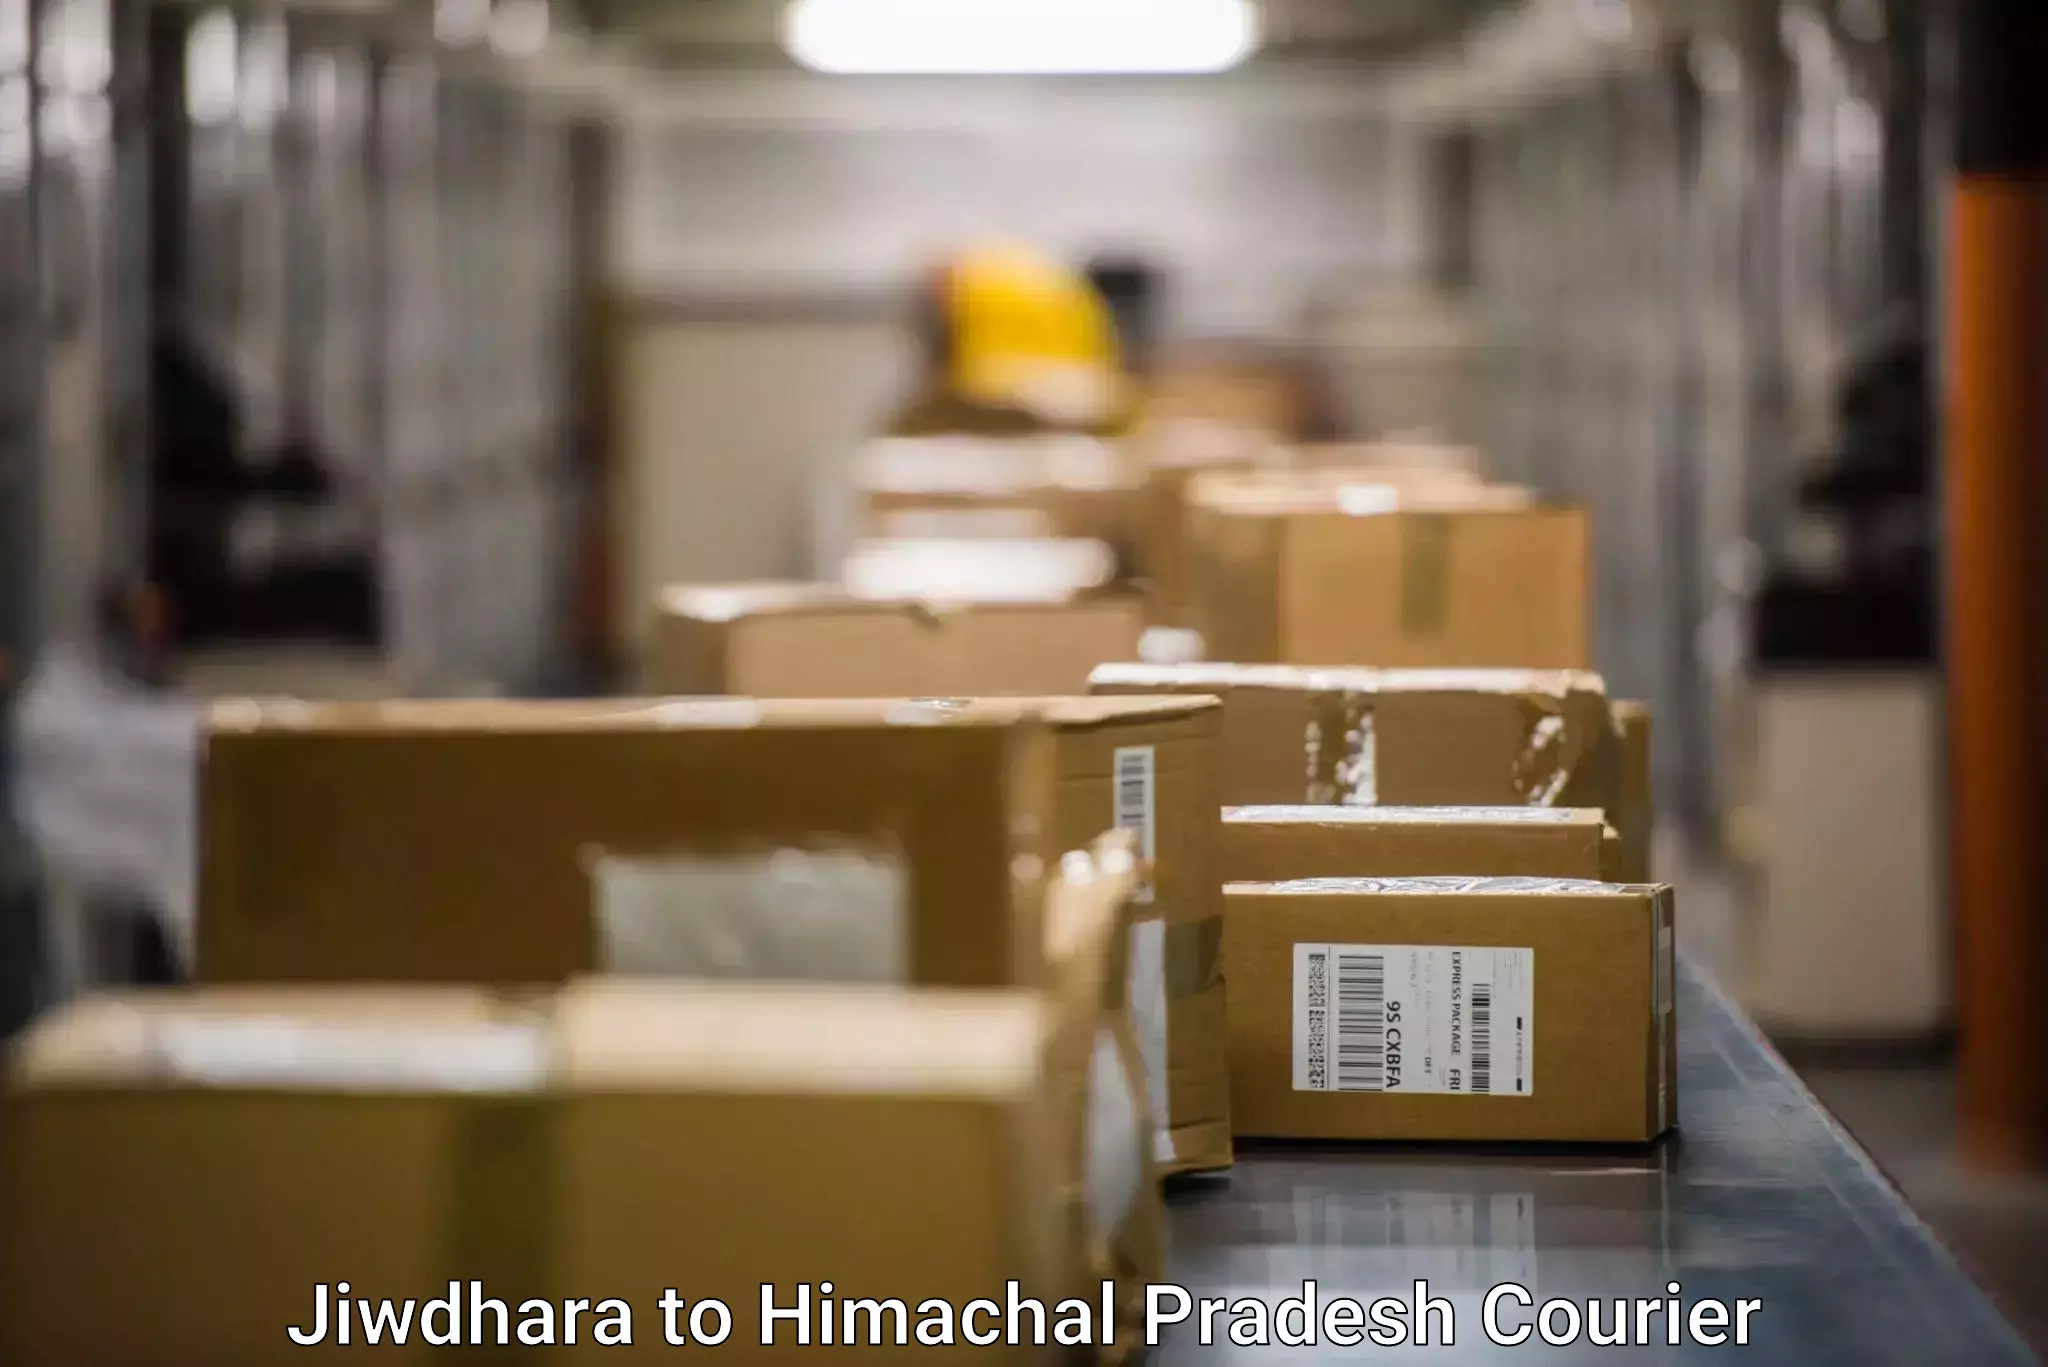 Seamless shipping service Jiwdhara to IIIT Una